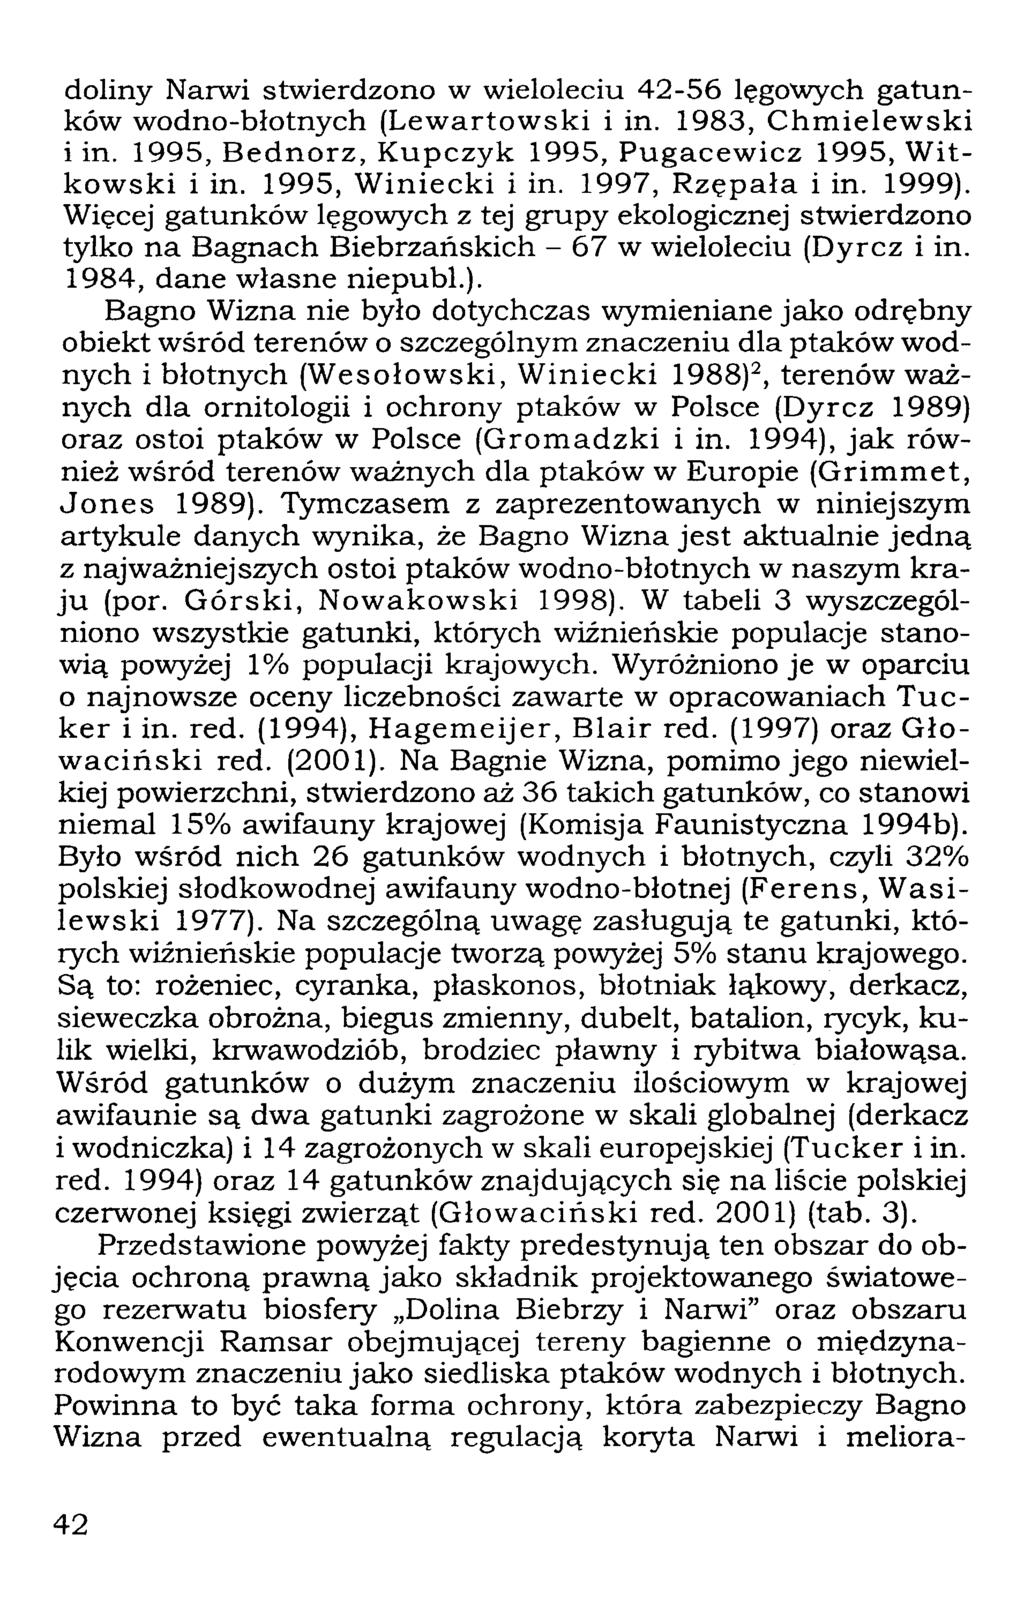 doliny Narwi stwierdzono w wieloleciu 42-56 lęgowych gatunków wodno-błotnych (Lewartowski i in. 1983, Chmielewski i in. 1995, Bednorz, Kupczyk 1995, Pugacewicz 1995, Witkowski i in.